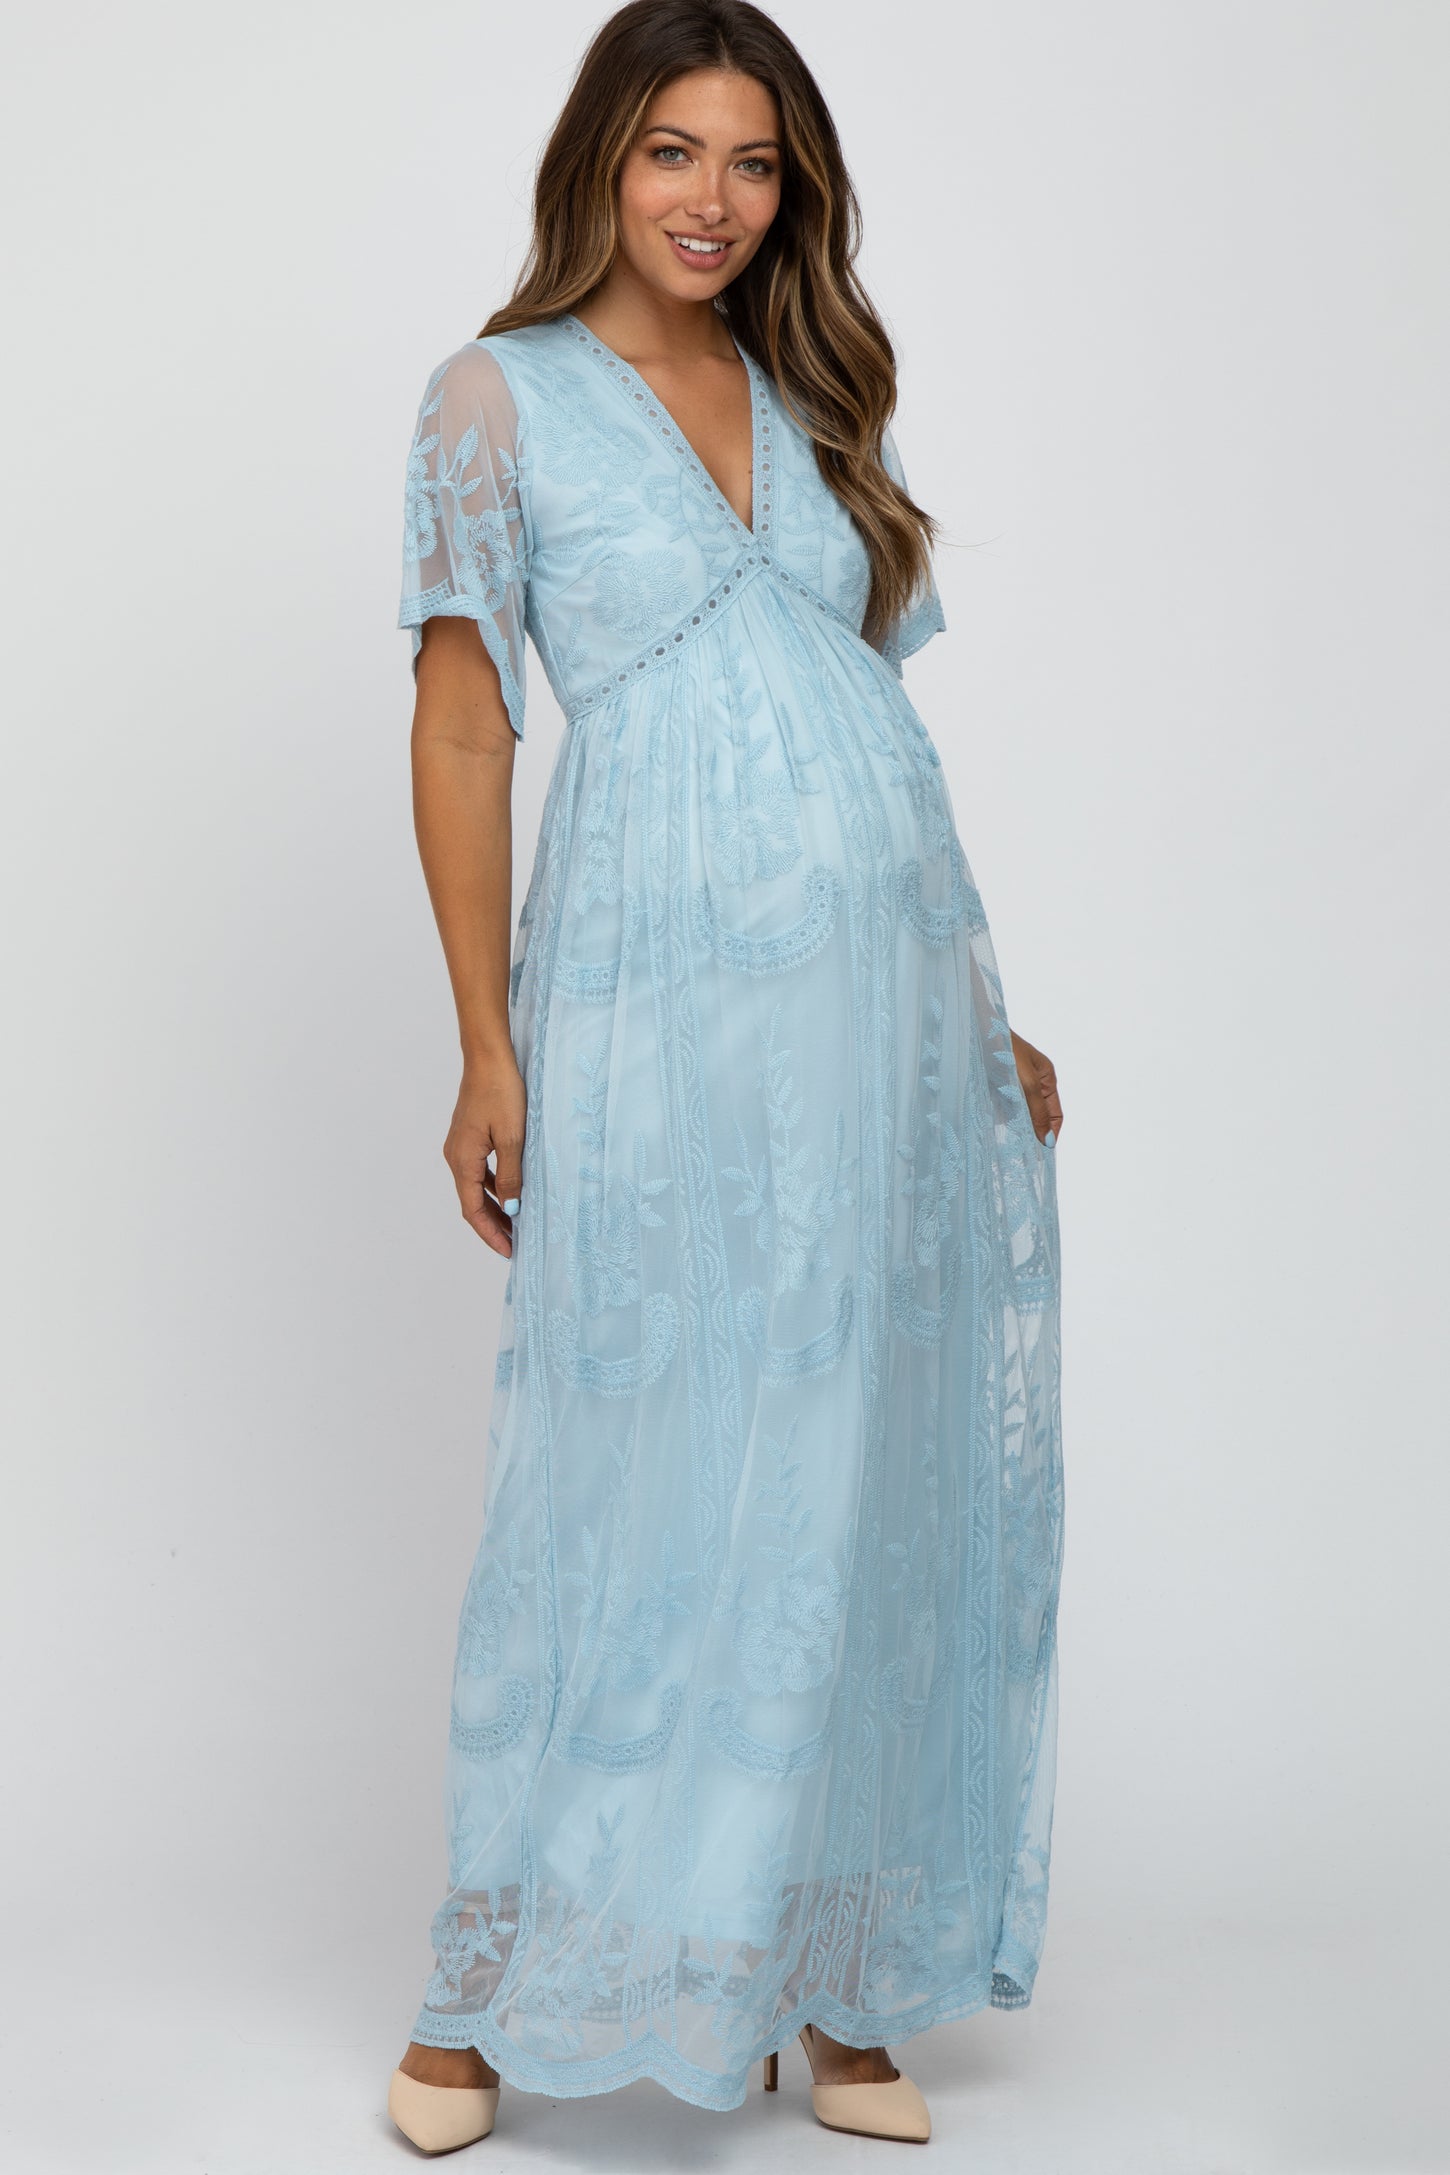 Light Blue Lace Mesh Overlay Maternity Maxi Dress– PinkBlush